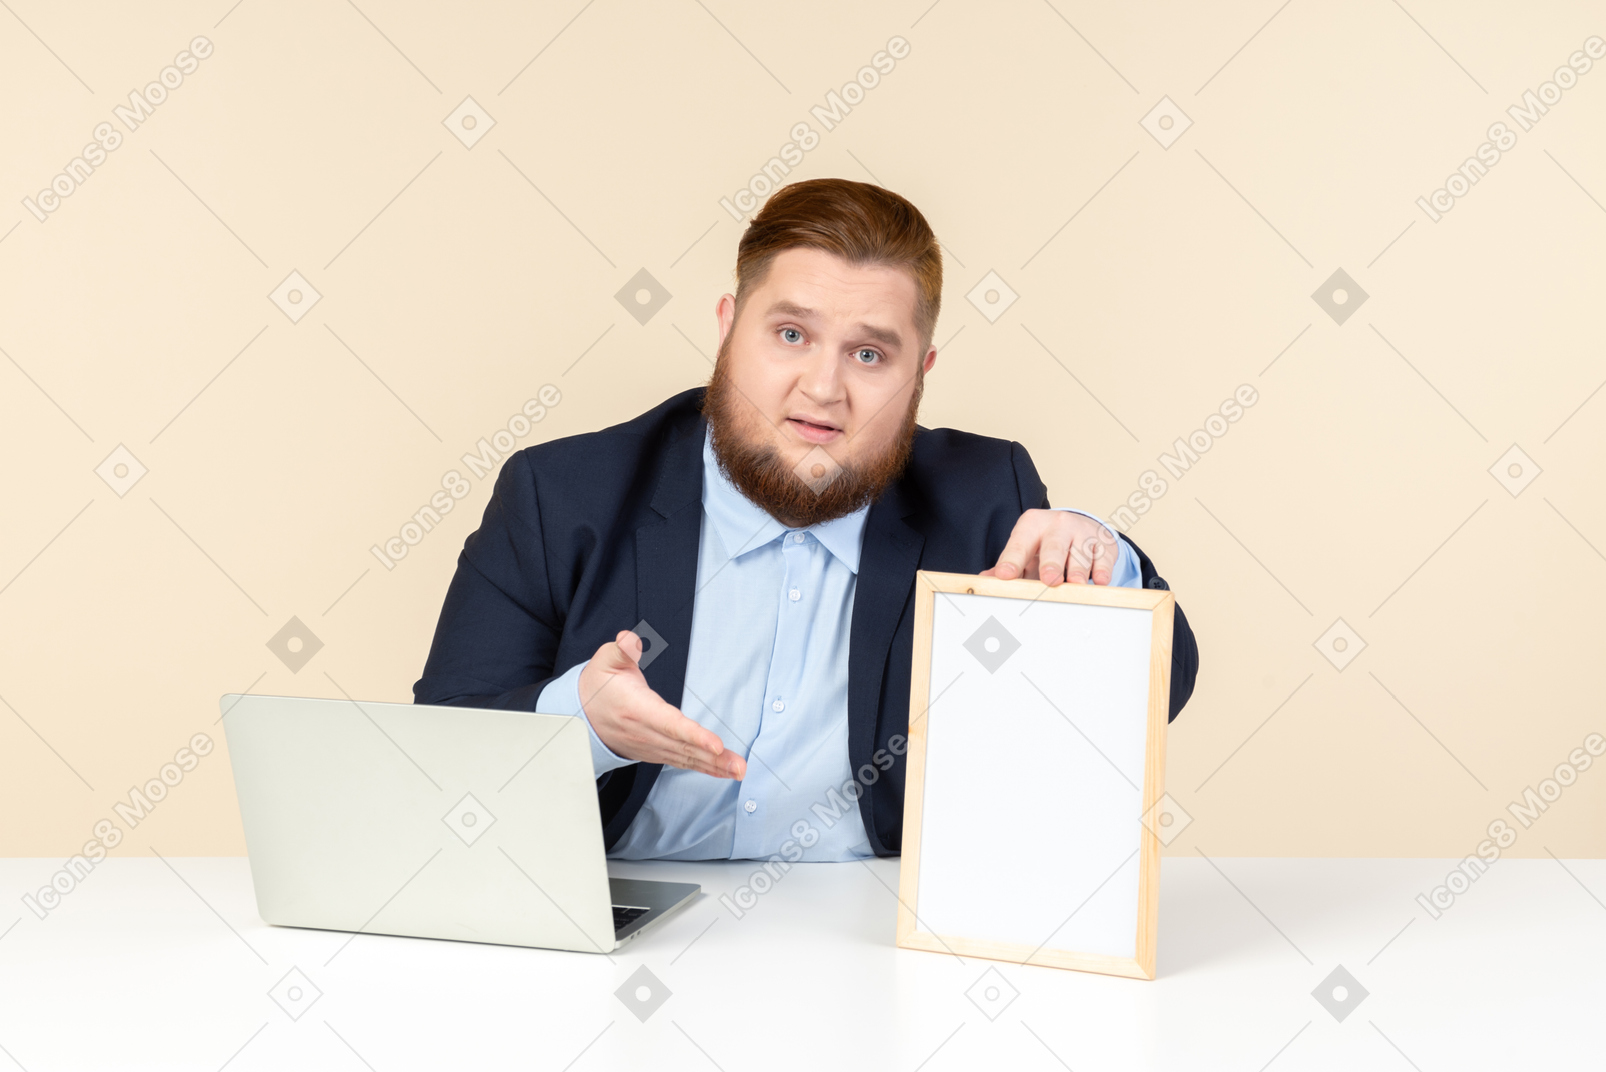 Joven con sobrepeso sentado frente a la computadora portátil y apuntando a la imagen